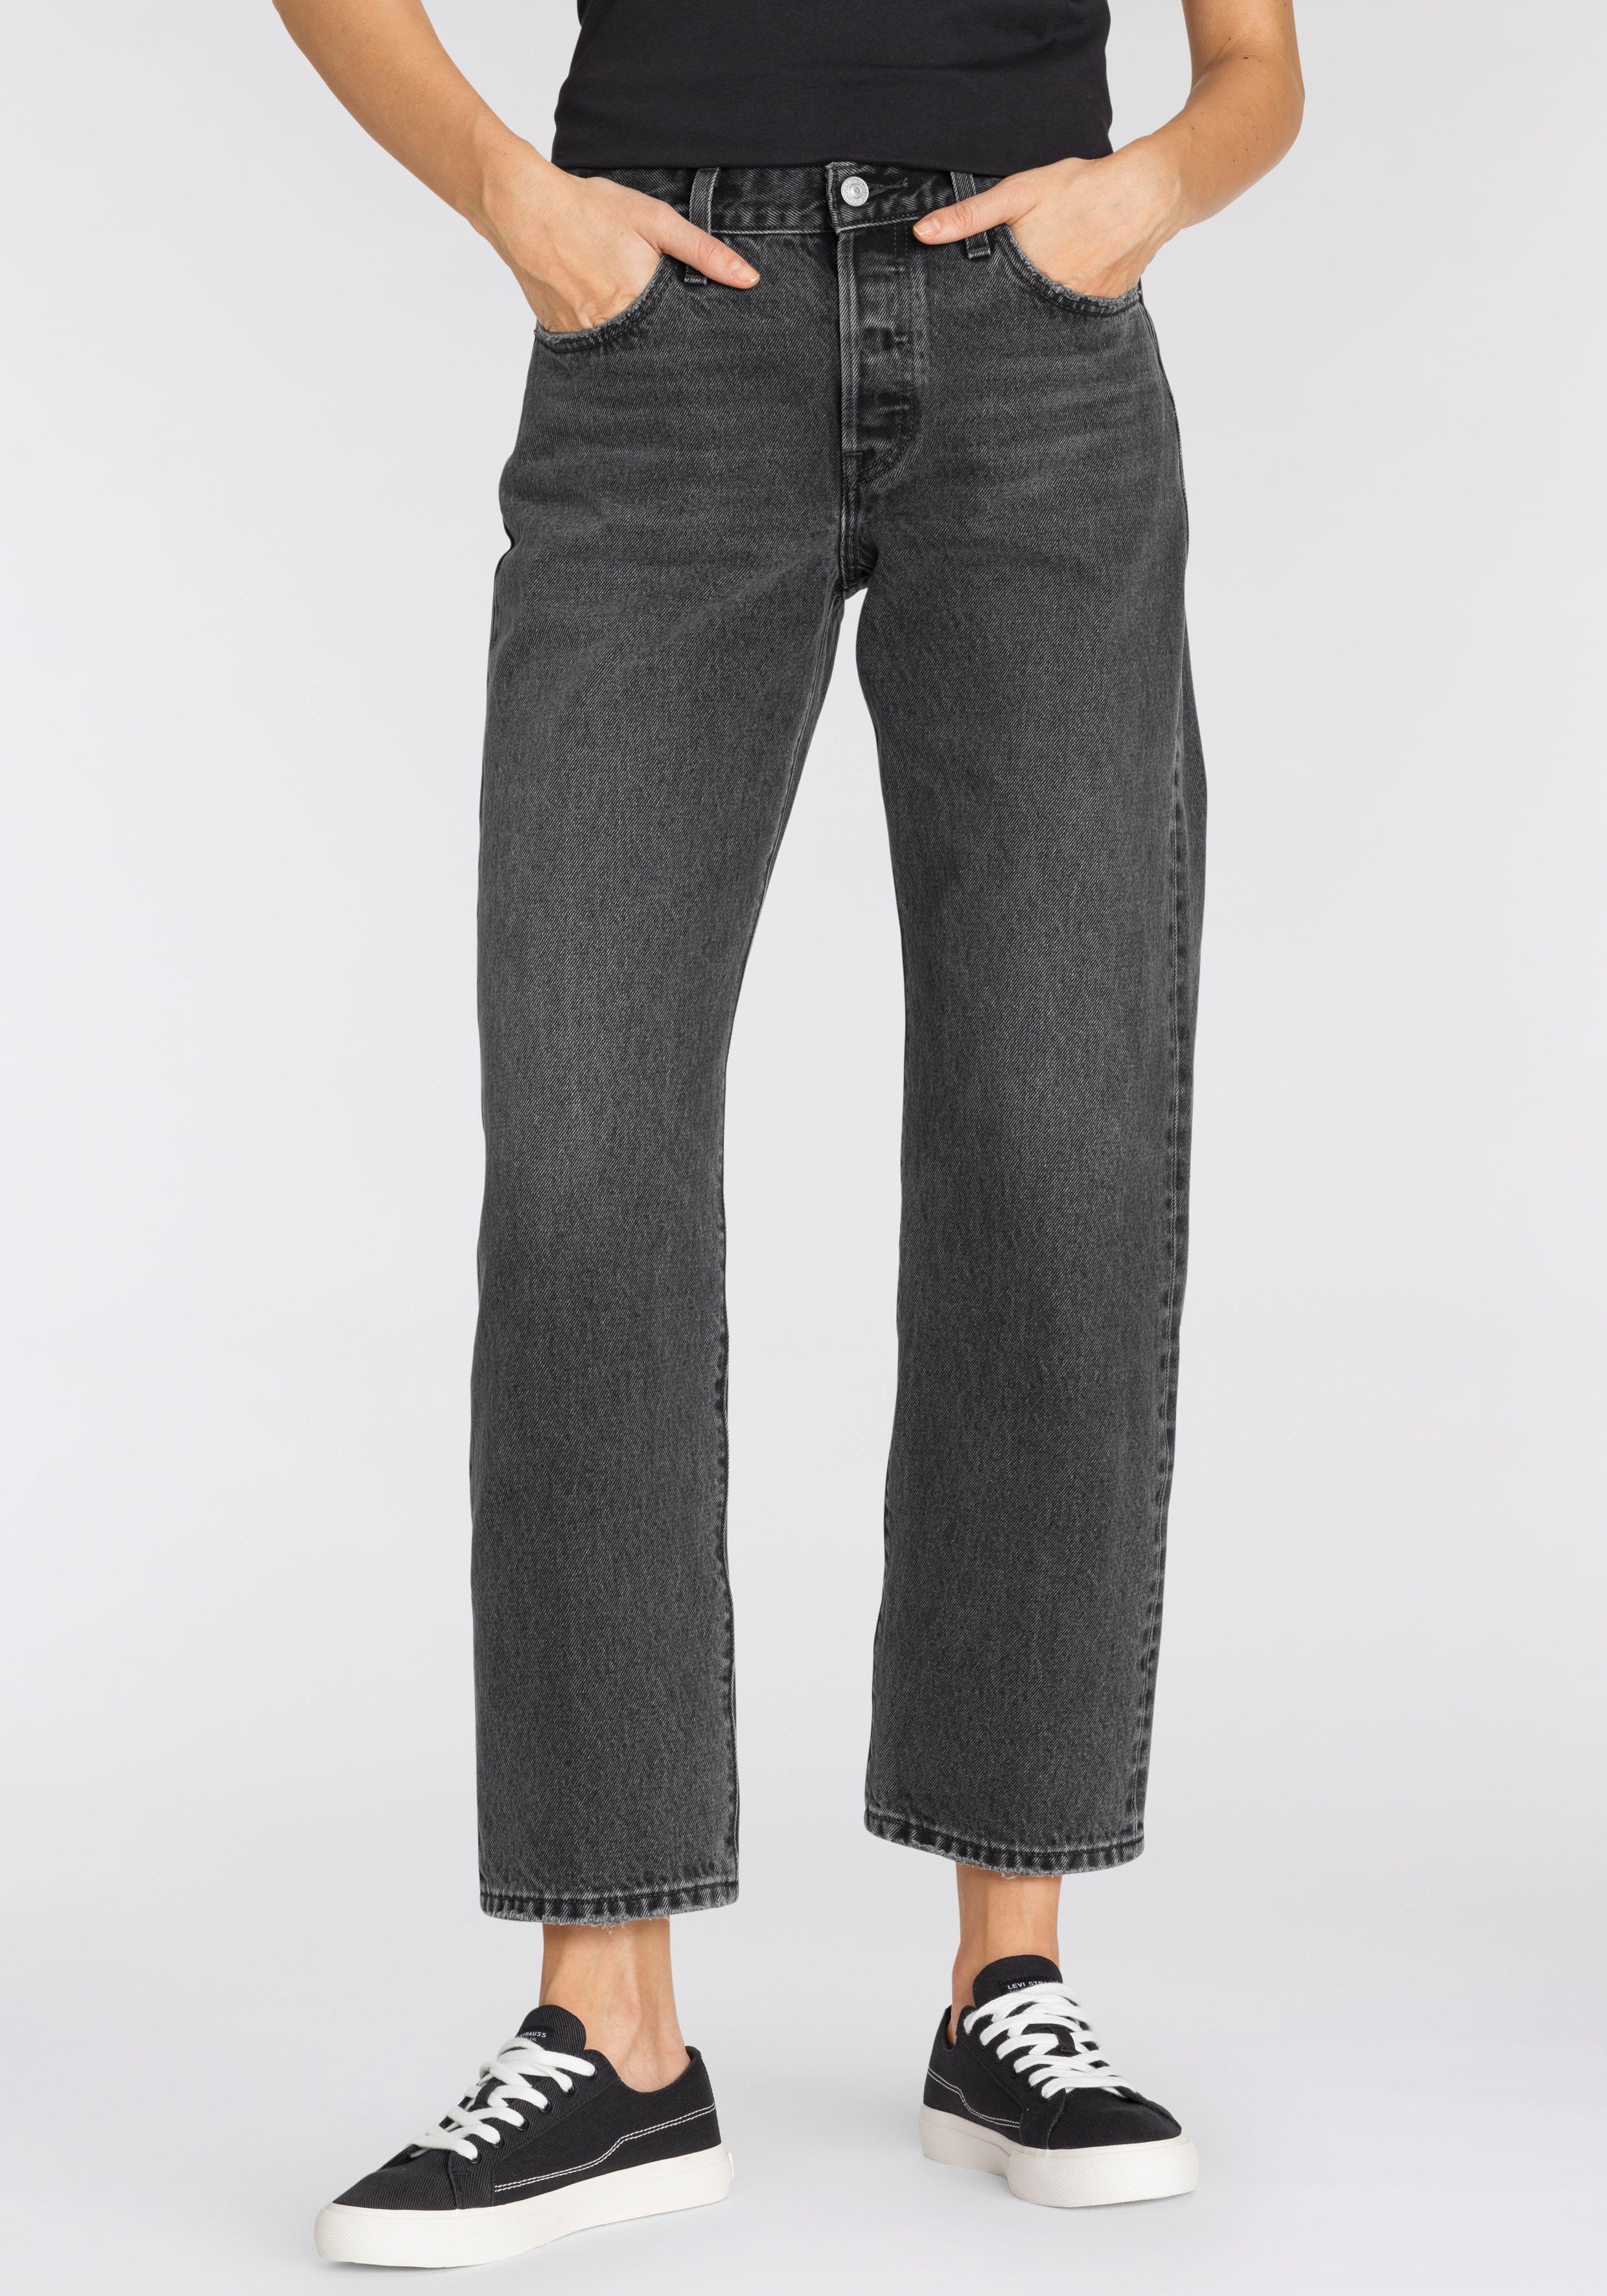 Damen Schlagjeans online kaufen » Flared Jeans | OTTO